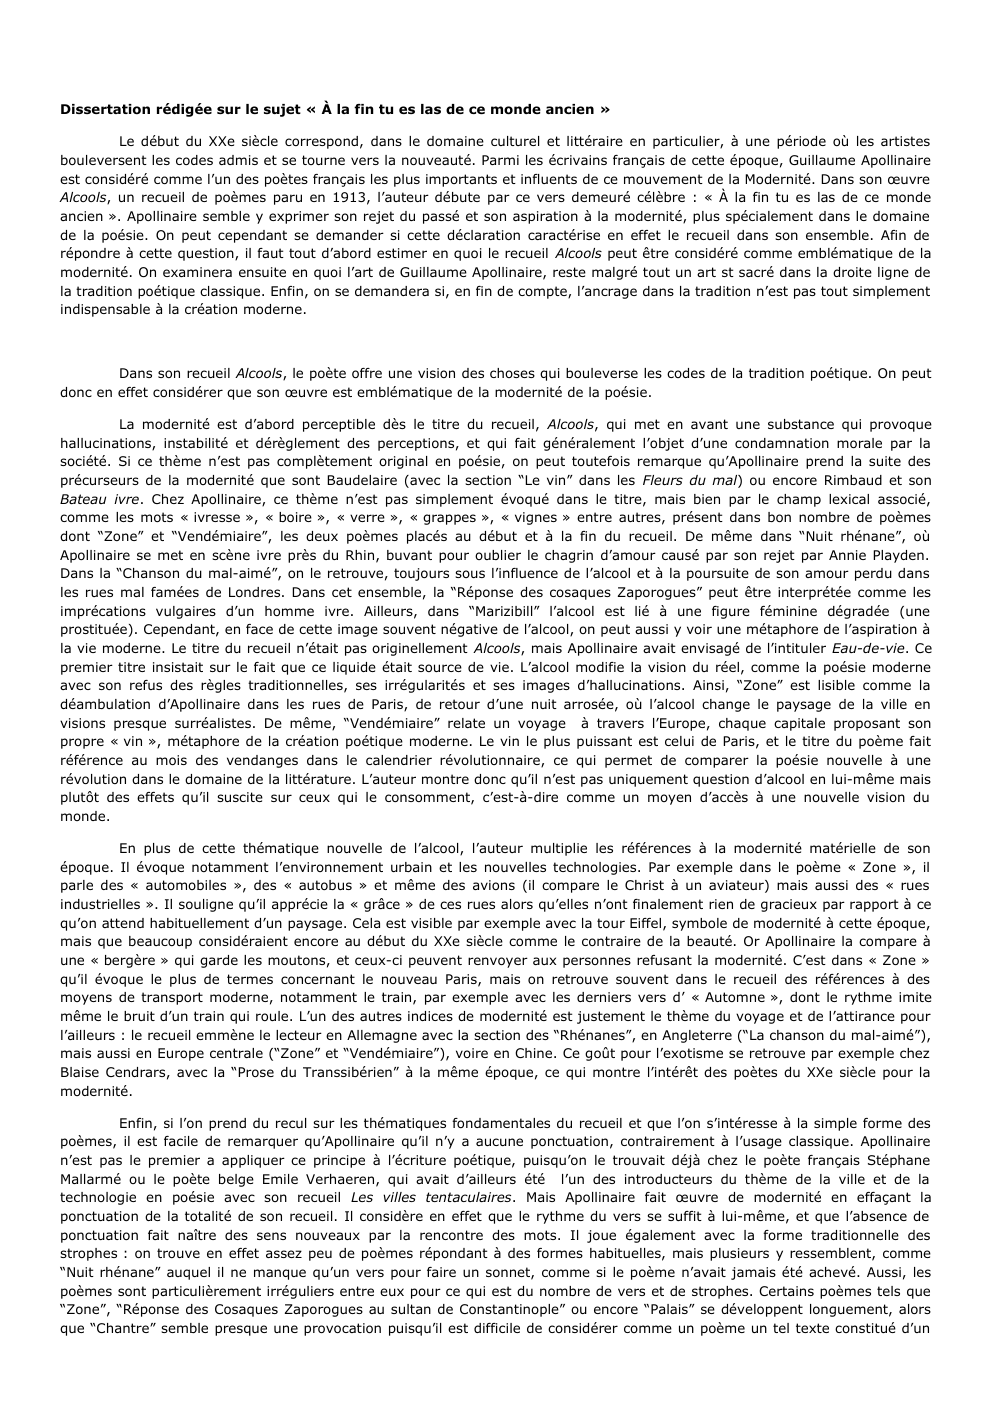 Prévisualisation du document dissertation alcools Guillaume Apollinaire: Dissertation rédigée sur le sujet « À la fin tu es las de ce monde ancien »